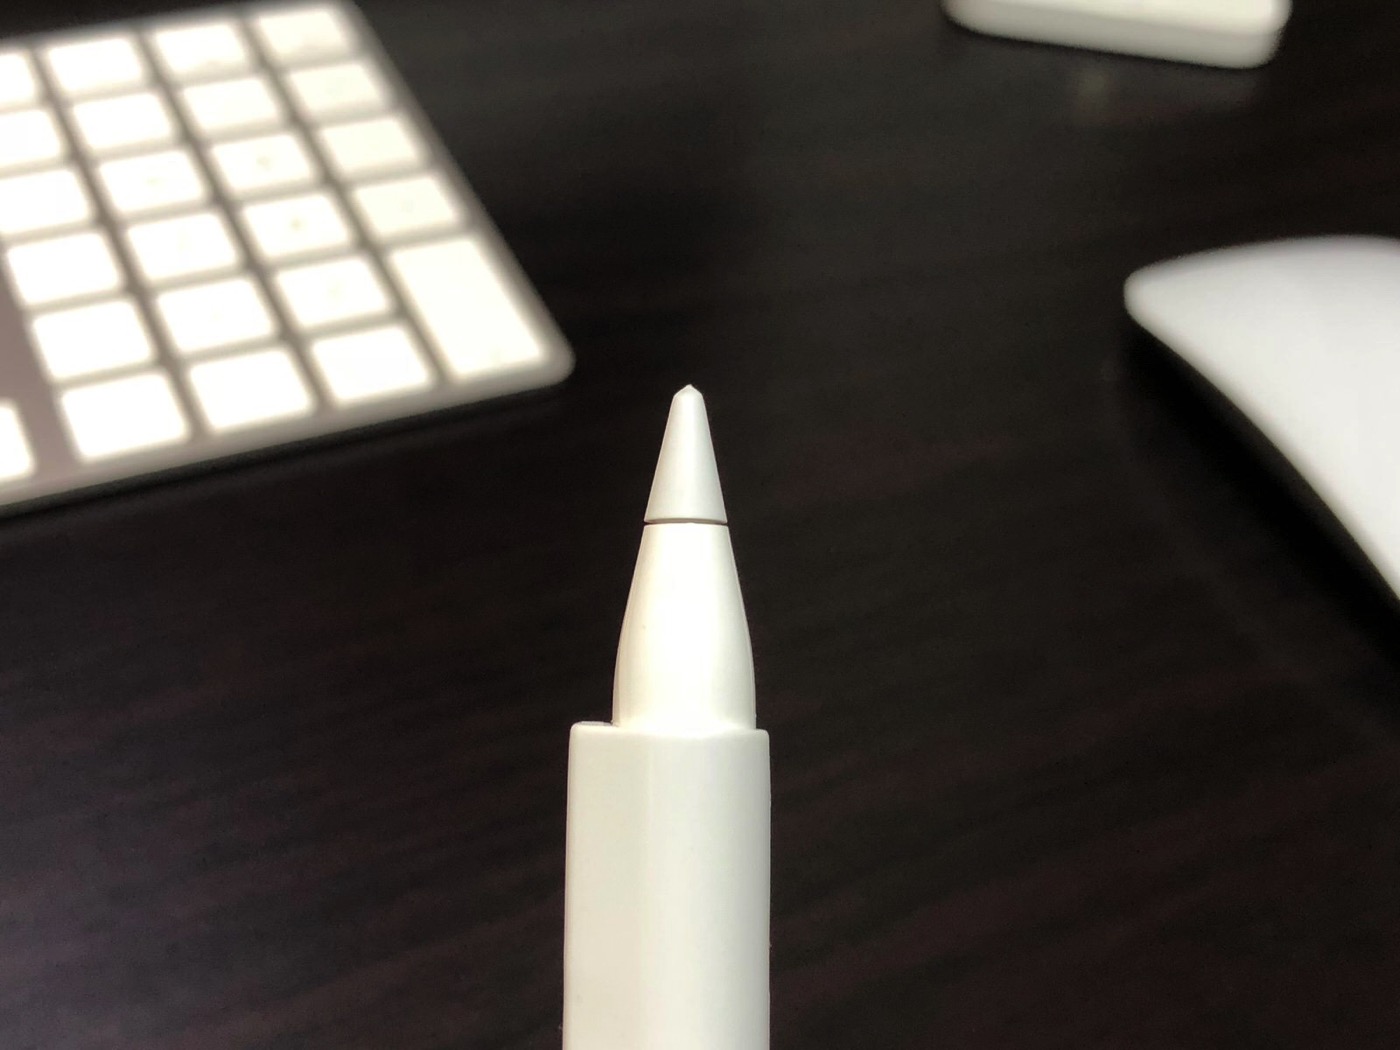 [Apple]iPad Proで使っているApple Pencilのペン先がすり減ってきたので新しいものを購入したみたらとても書きやすくなったよ